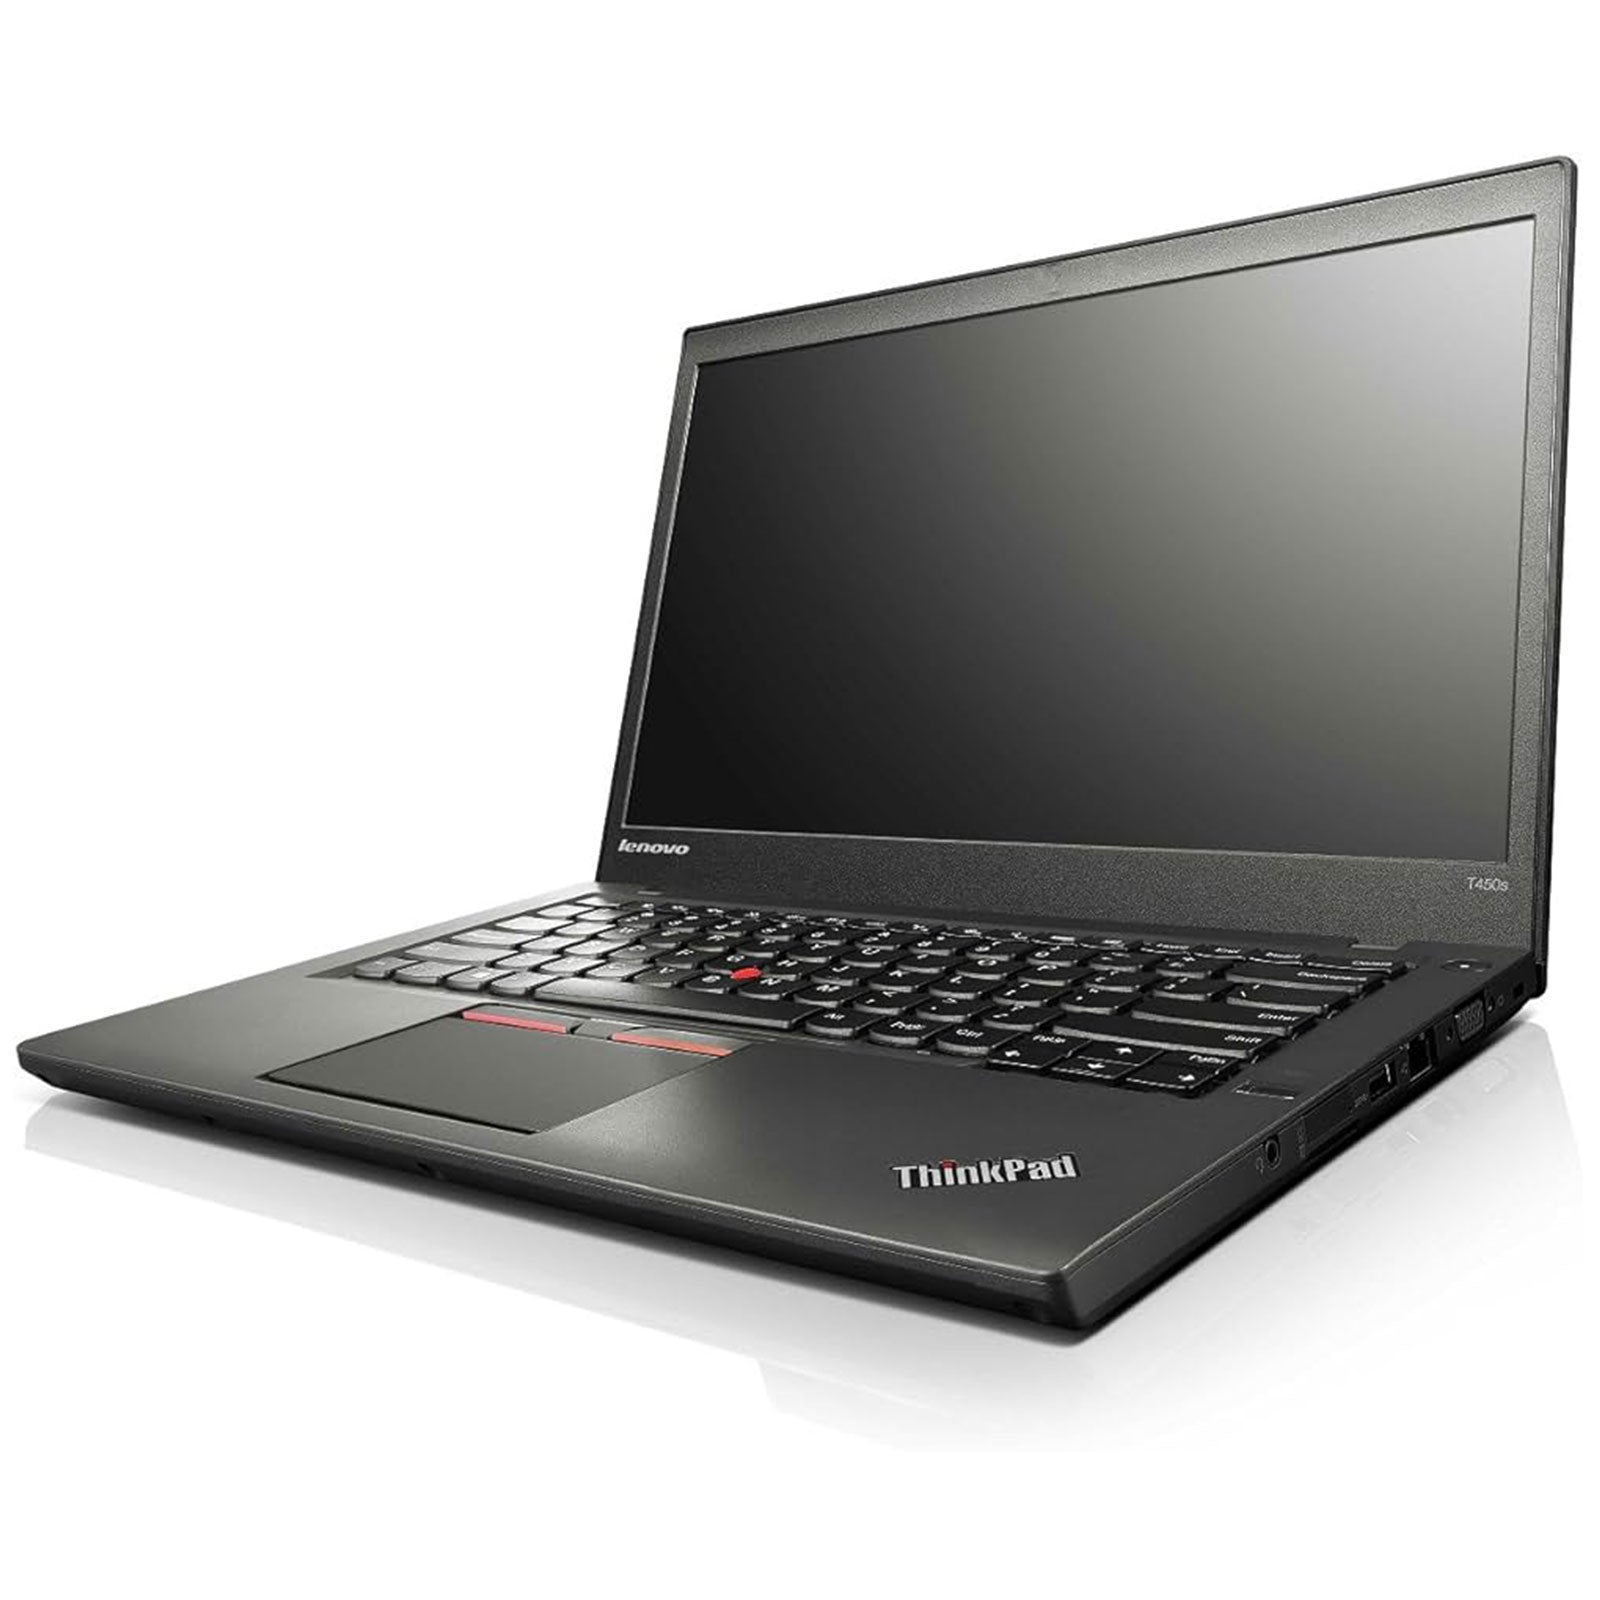 Notebook ricondizionato - Grado A - Lenovo Thinkpad T450S 14" Intel i5-5300U Ram 12GB SSD 512GB (Ricondizionato) - Disponibile in 2-4 giorni lavorativi